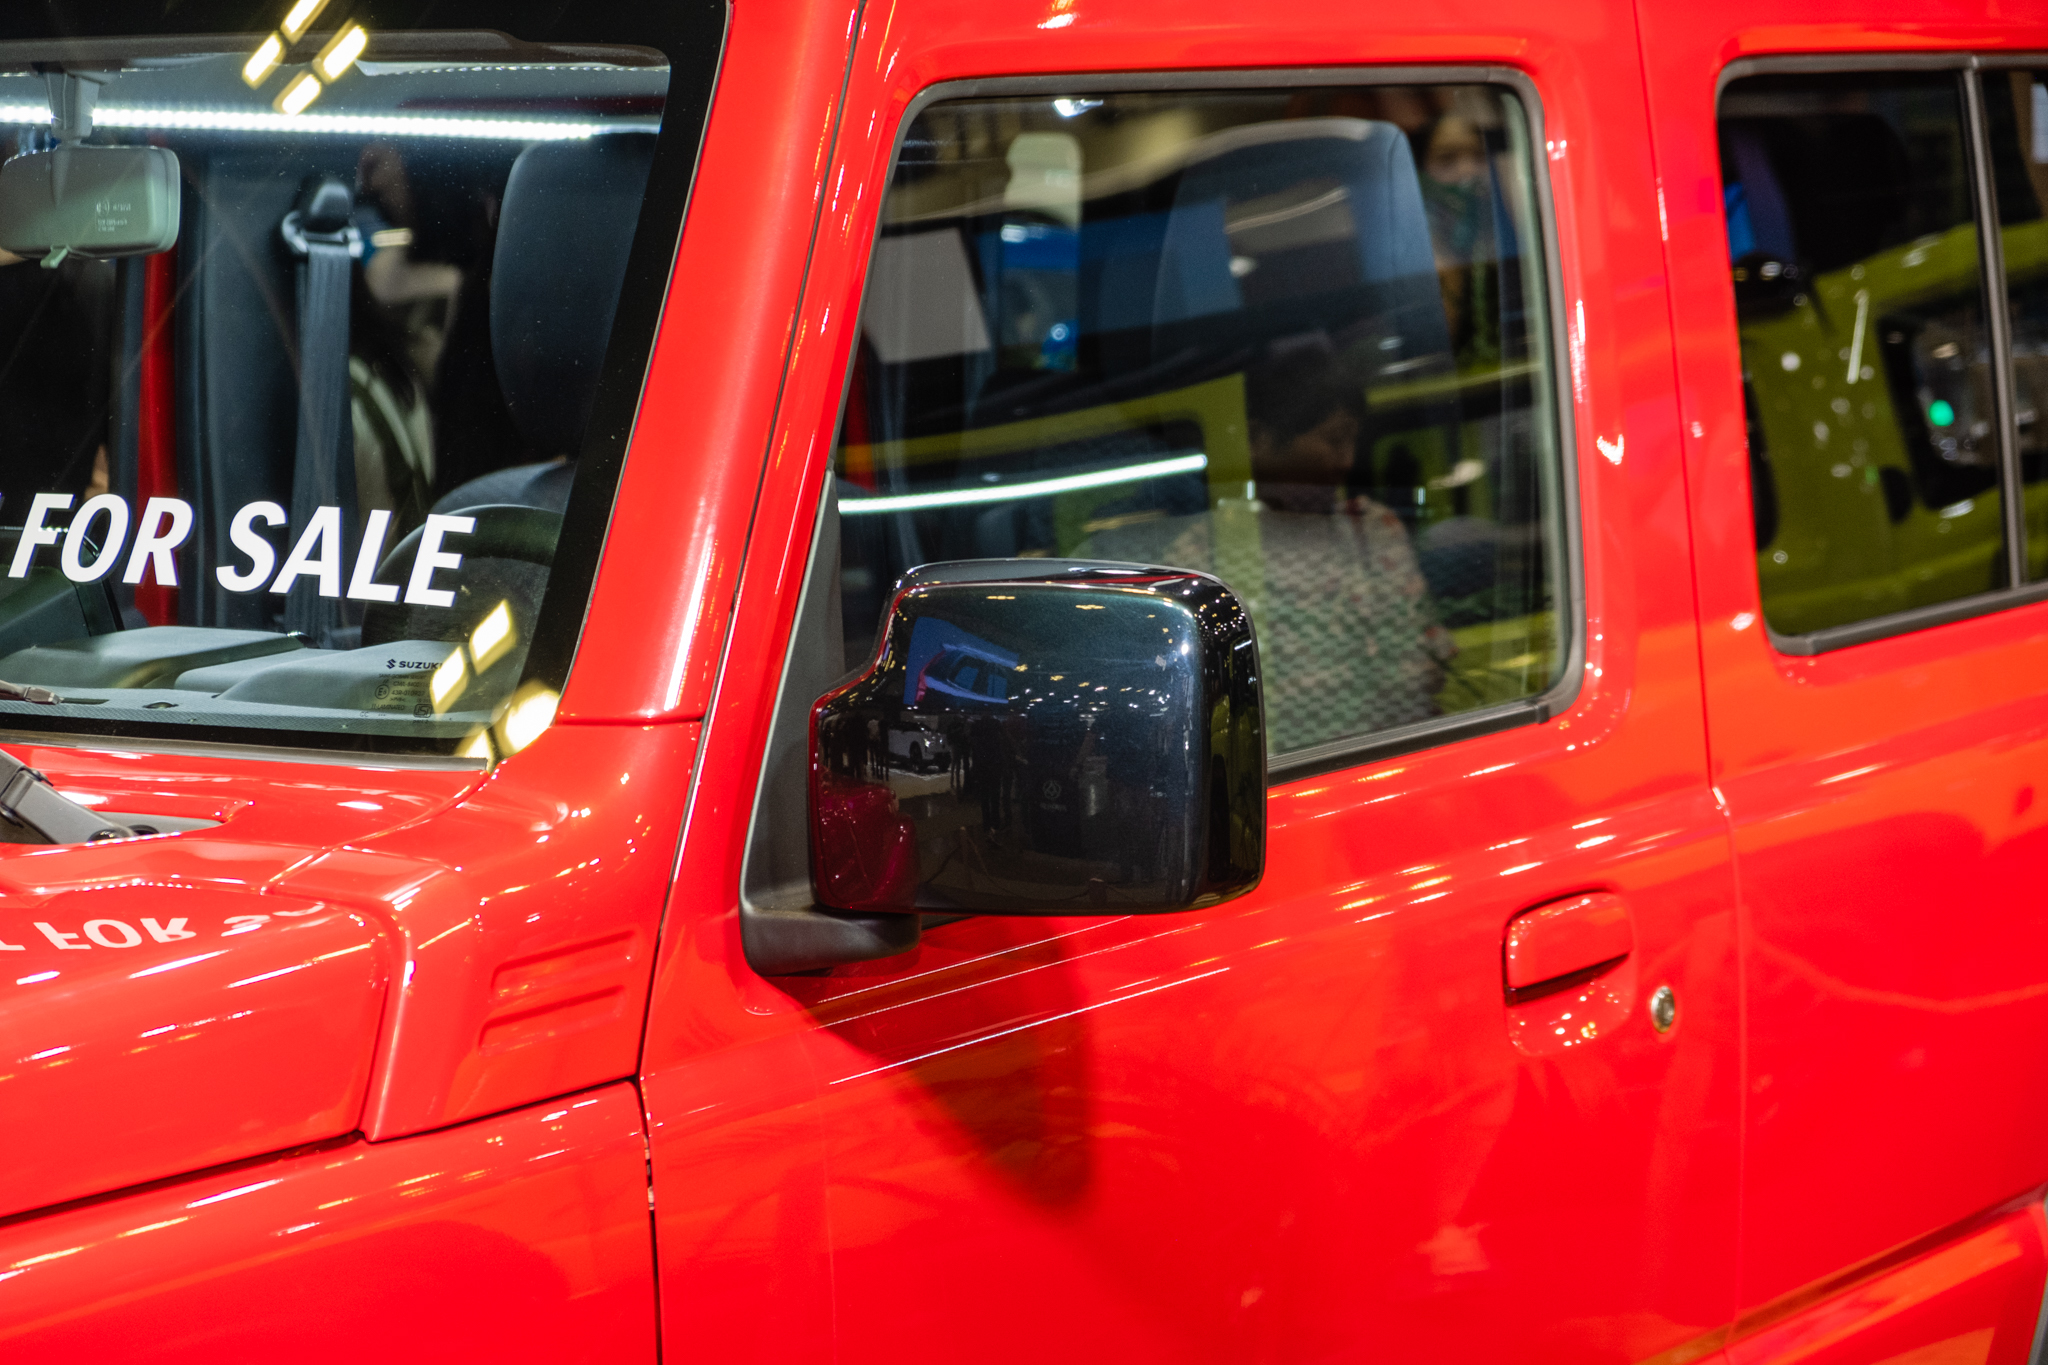 Xem thử Suzuki Jimny 5 cửa sắp bán tại ĐNÁ: Thực dụng hơn, nhiều khách Việt đang mong chờ - Ảnh 5.